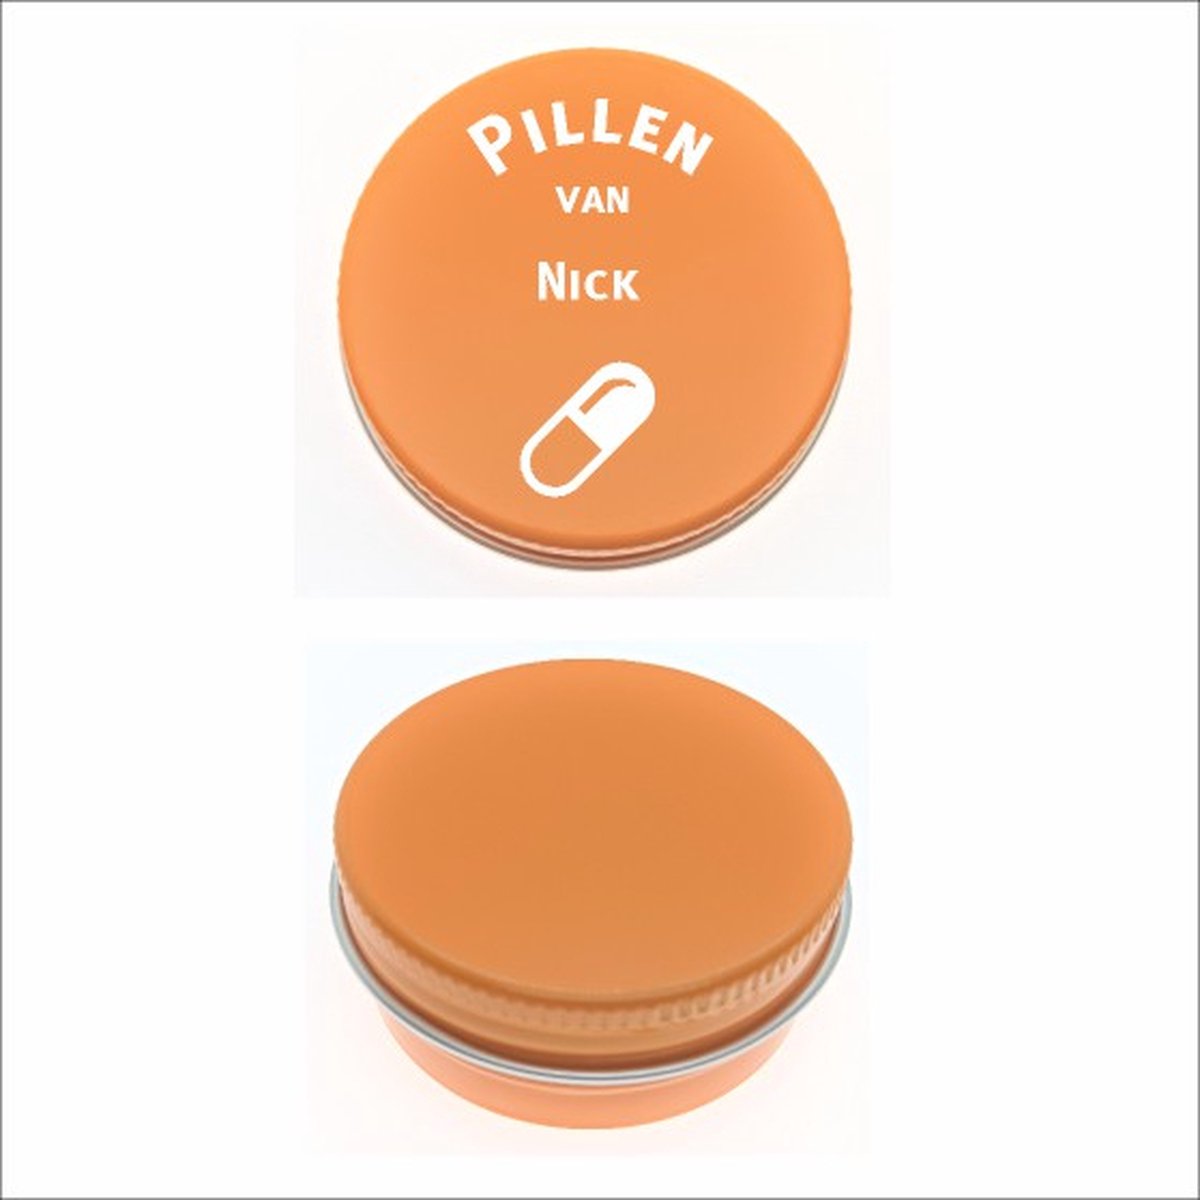 Pillen Blikje Met Naam Gravering - Nick